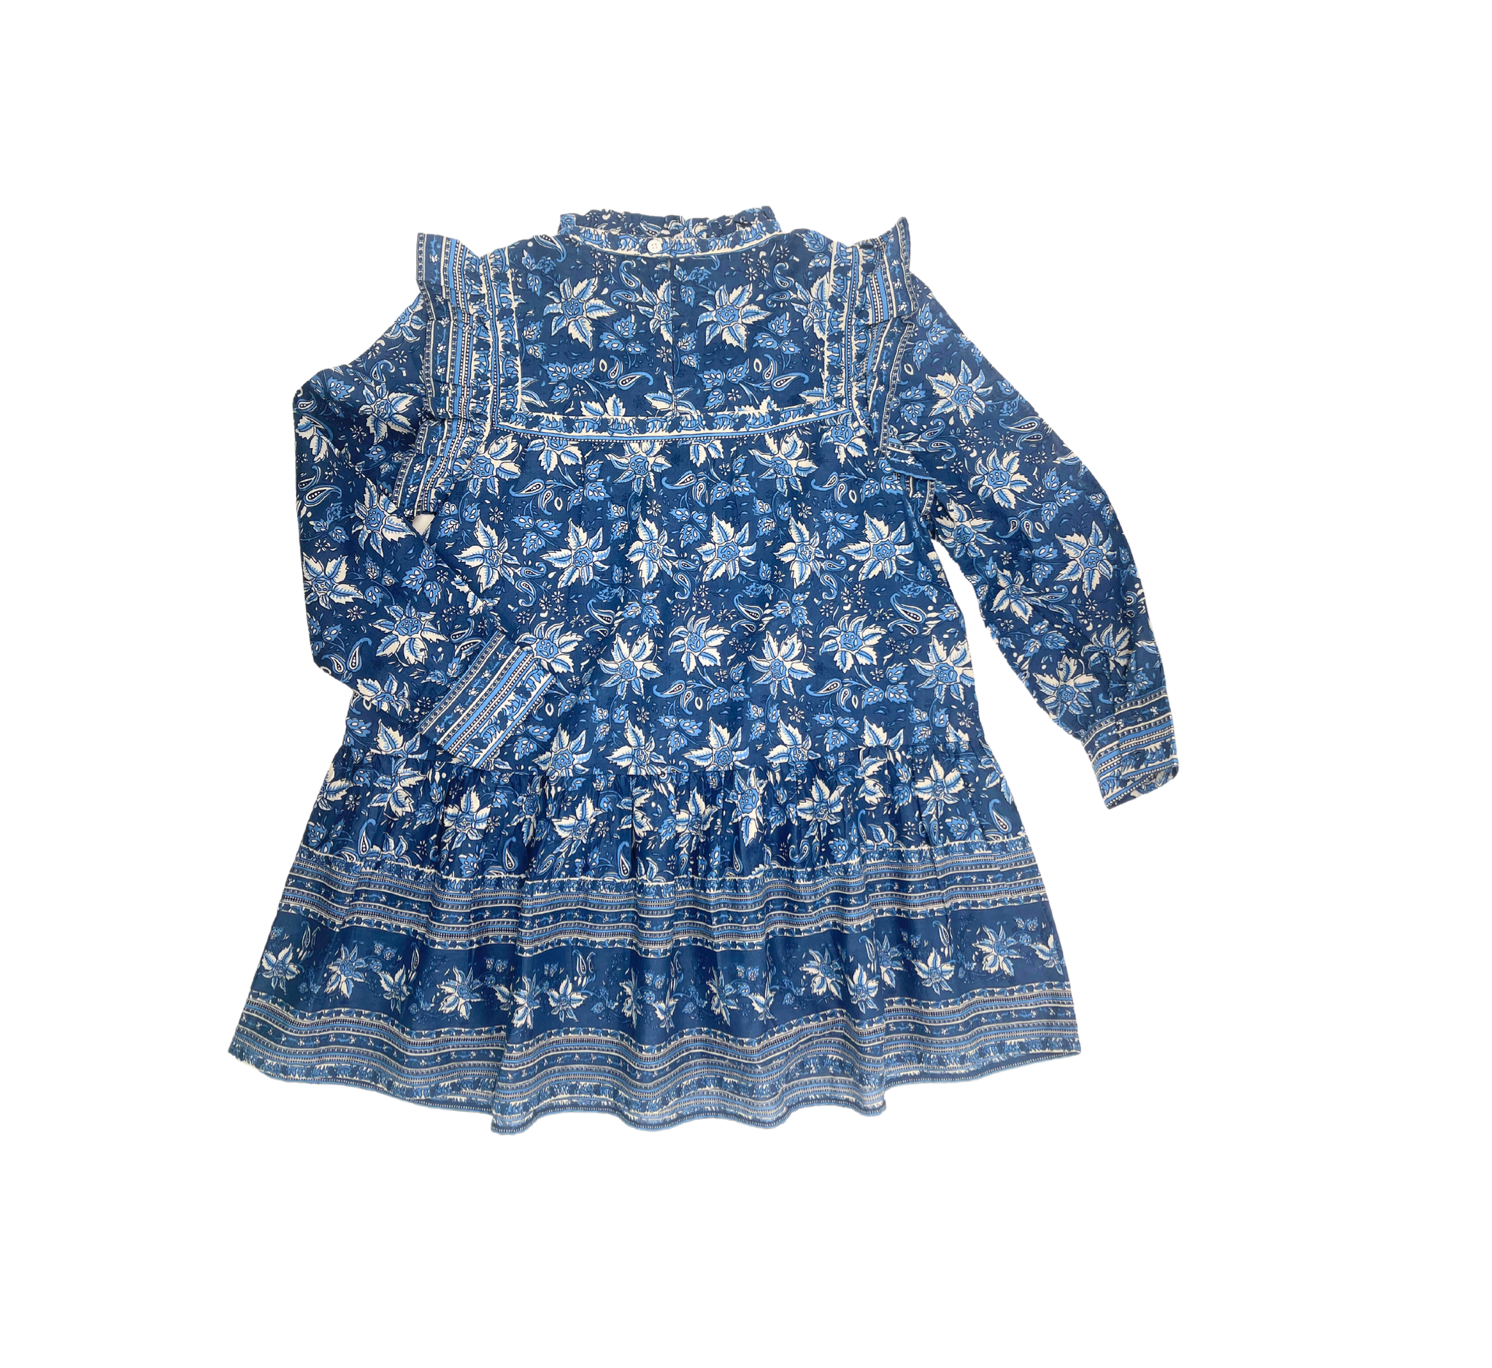 SEZANE - Robe en coton bleue - 8 ans